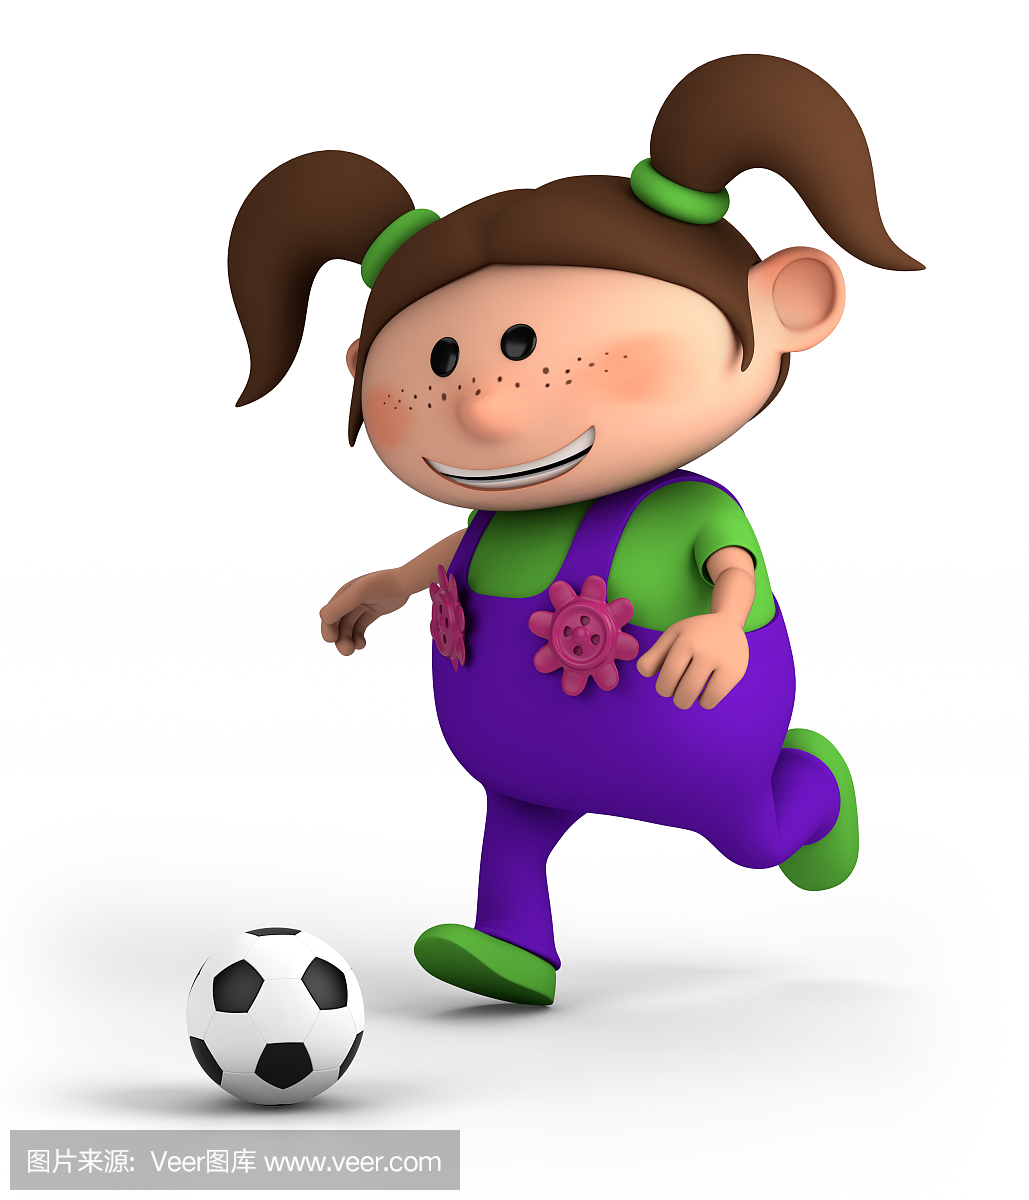 女孩踢足球